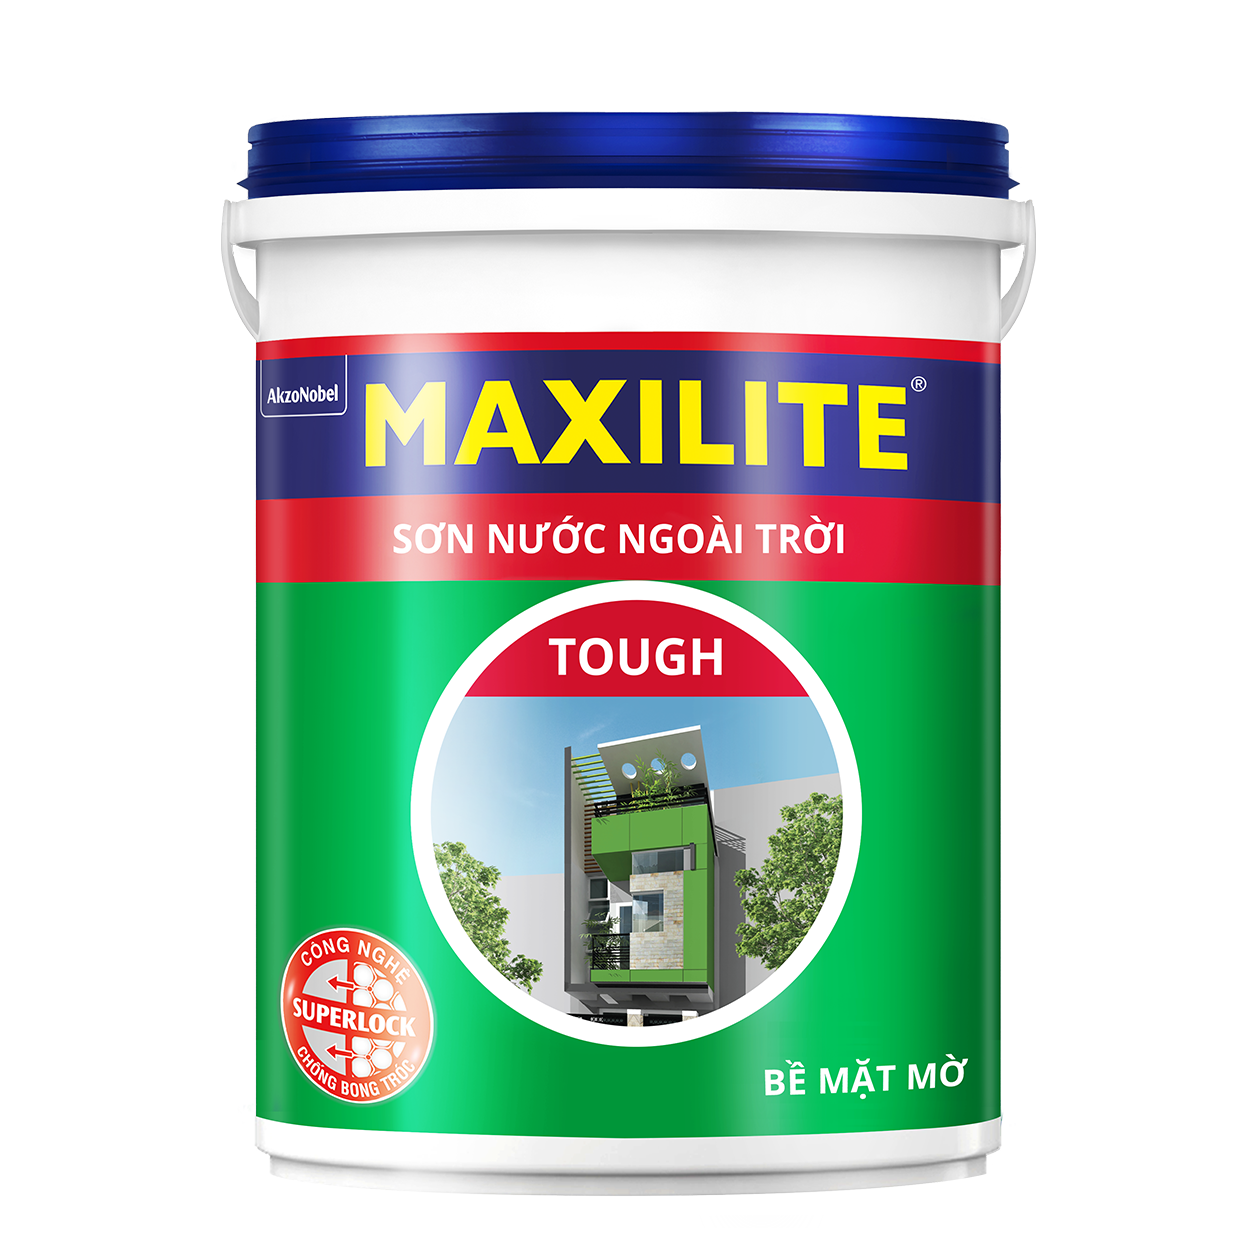 Sơn ngoài trời Maxilite Tough là một sản phẩm được thiết kế để chịu được các điều kiện thời tiết khắc nghiệt nhất. Với khả năng chống thấm, chống tia UV và chống rong rêu hiệu quả, sản phẩm này đang trở thành sự lựa chọn hàng đầu của nhiều chủ nhà. Hãy để xem qua hình ảnh để hiểu rõ hơn về tính năng và độ bền của sản phẩm này.